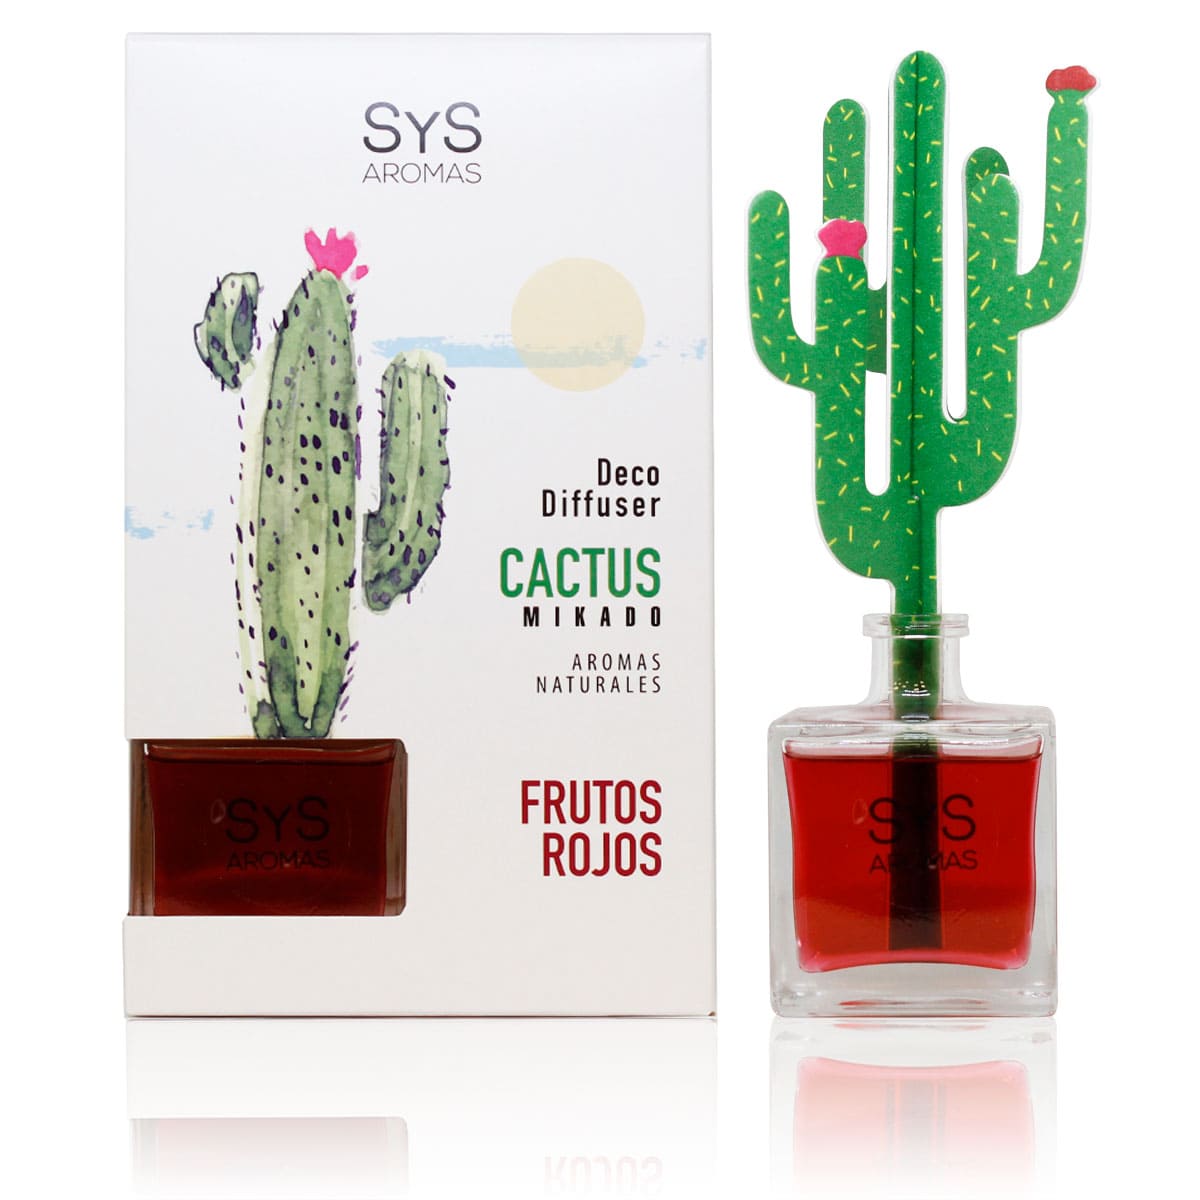 Comprar Ambientador Difusor cactus Frutos Rojos 90ml SYS Aromas